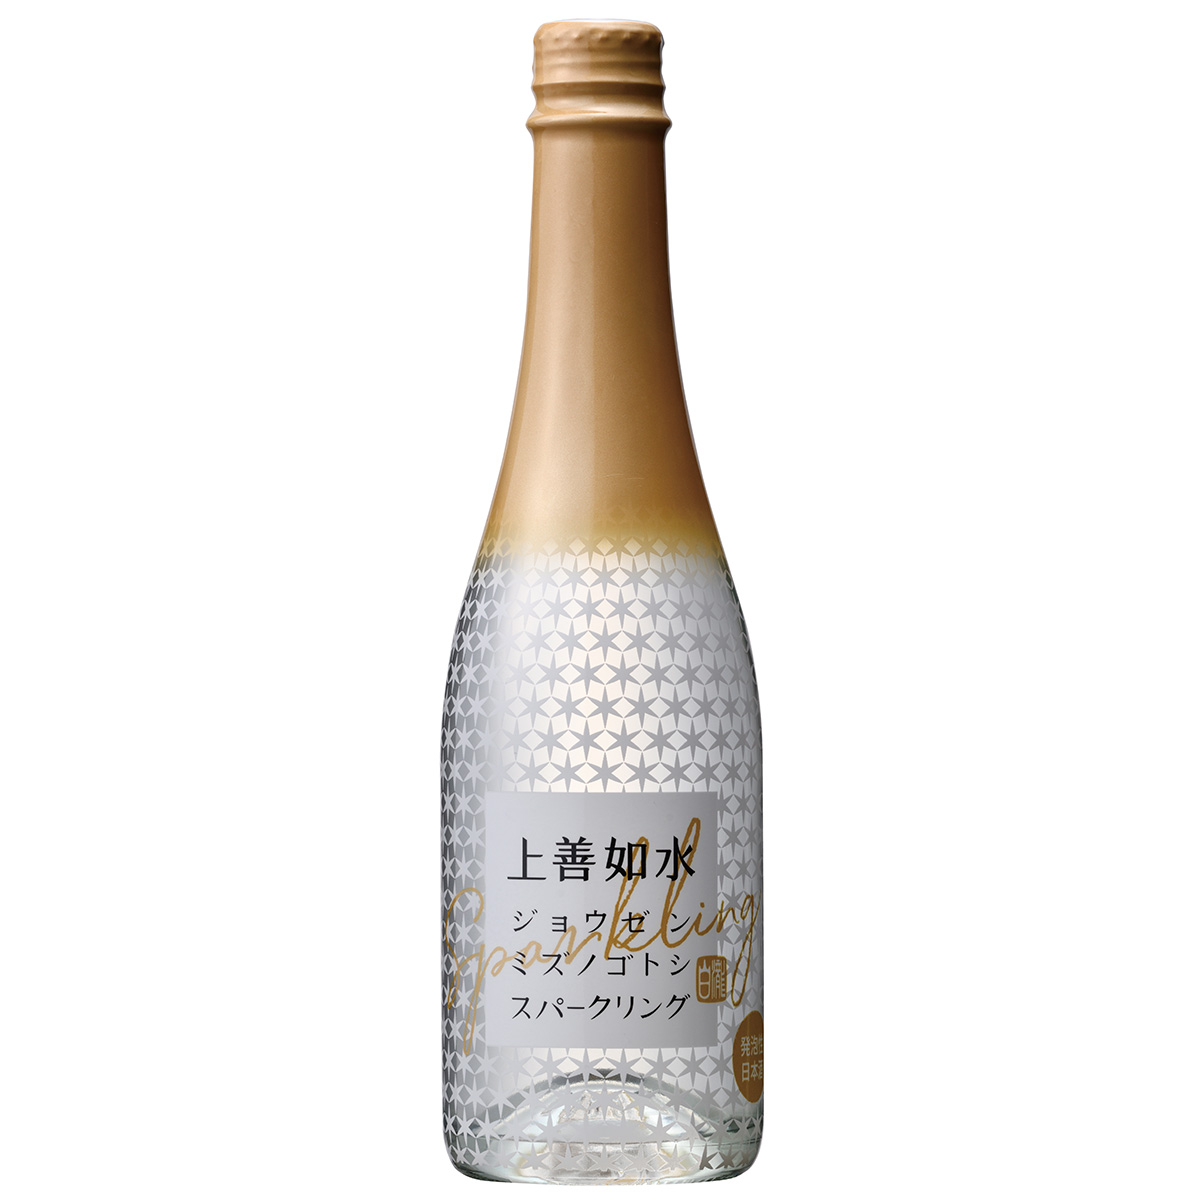 日本酒の枠を超えた大人のスパークリング 驚きの価格が実現 日本酒 ギフト 季節のおすすめ商品 白瀧酒造 360ml 上善如水スパークリング